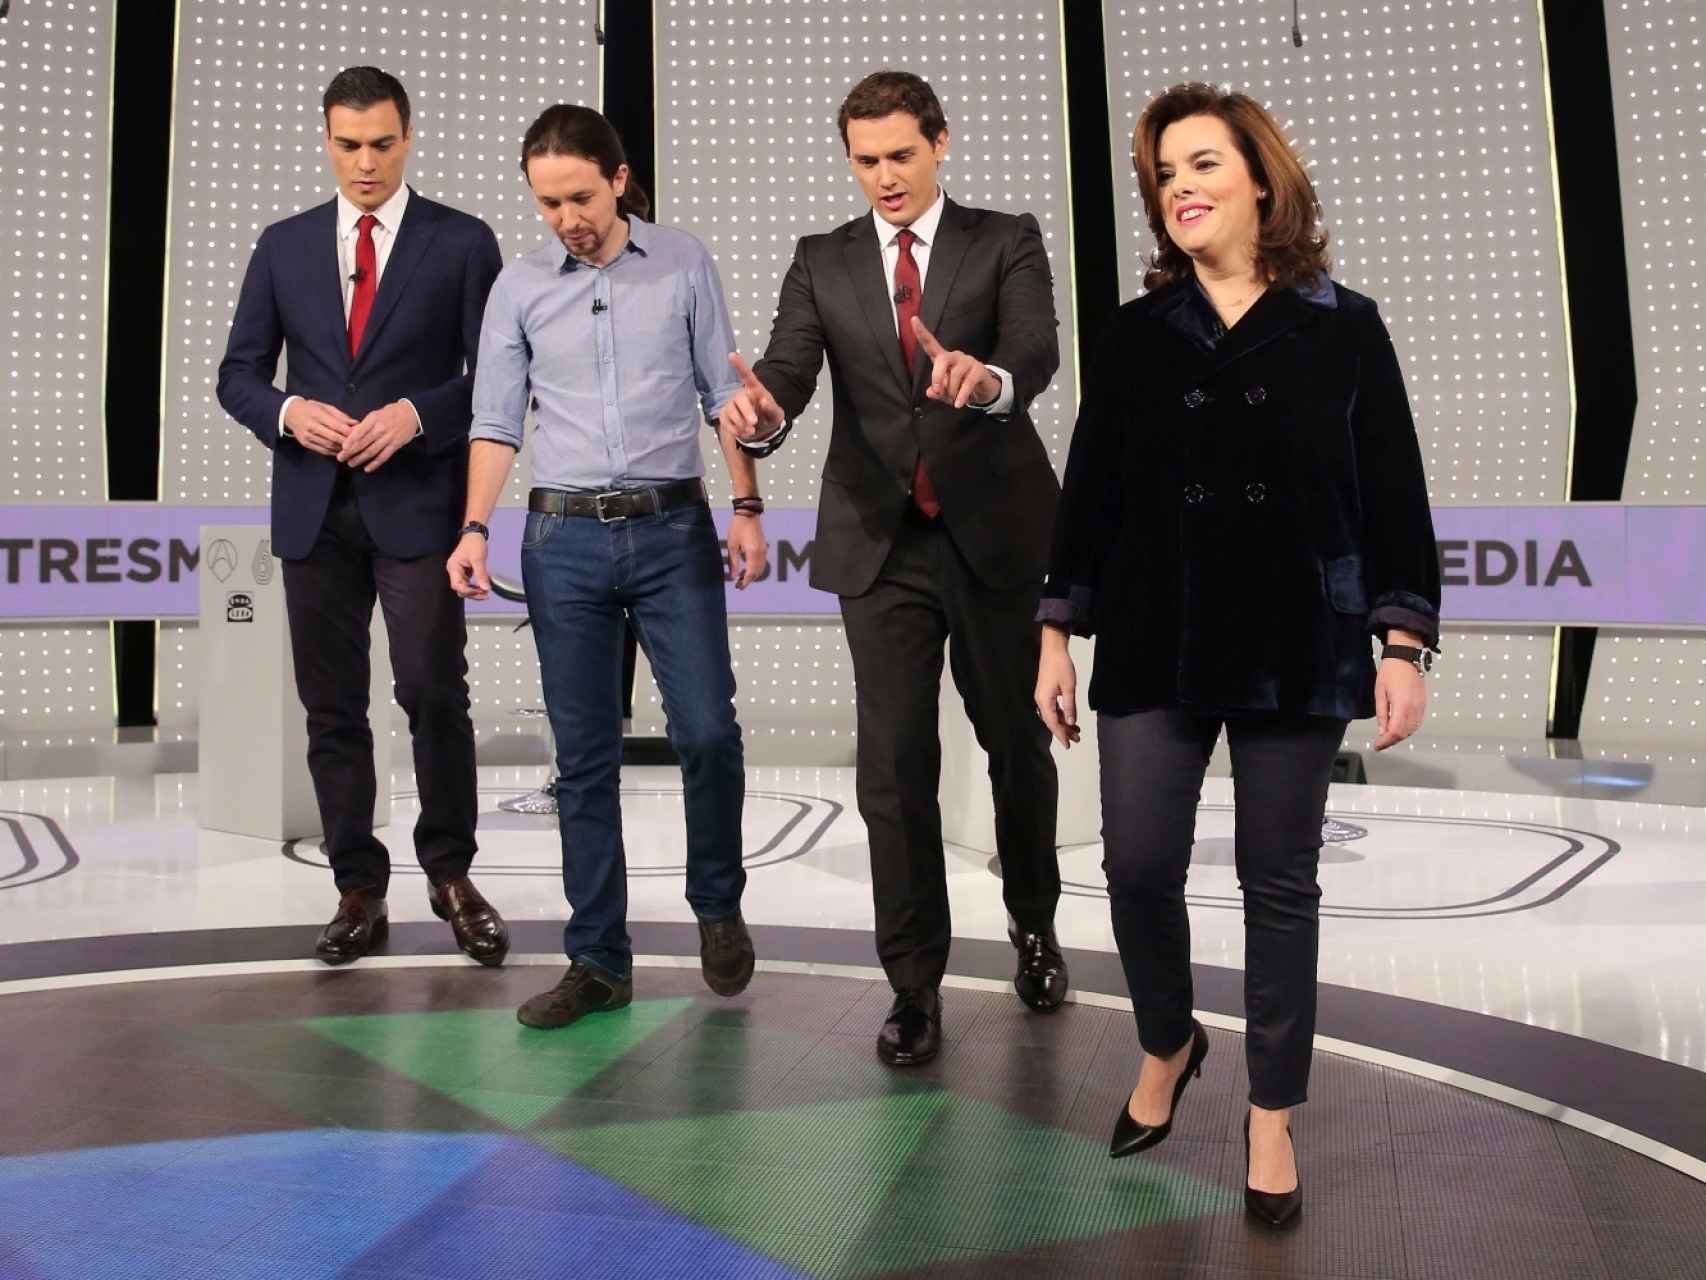 Pedro Sánchez, Pablo Iglesias, Albert Rivera y Soraya Sáenz de Santamaría.